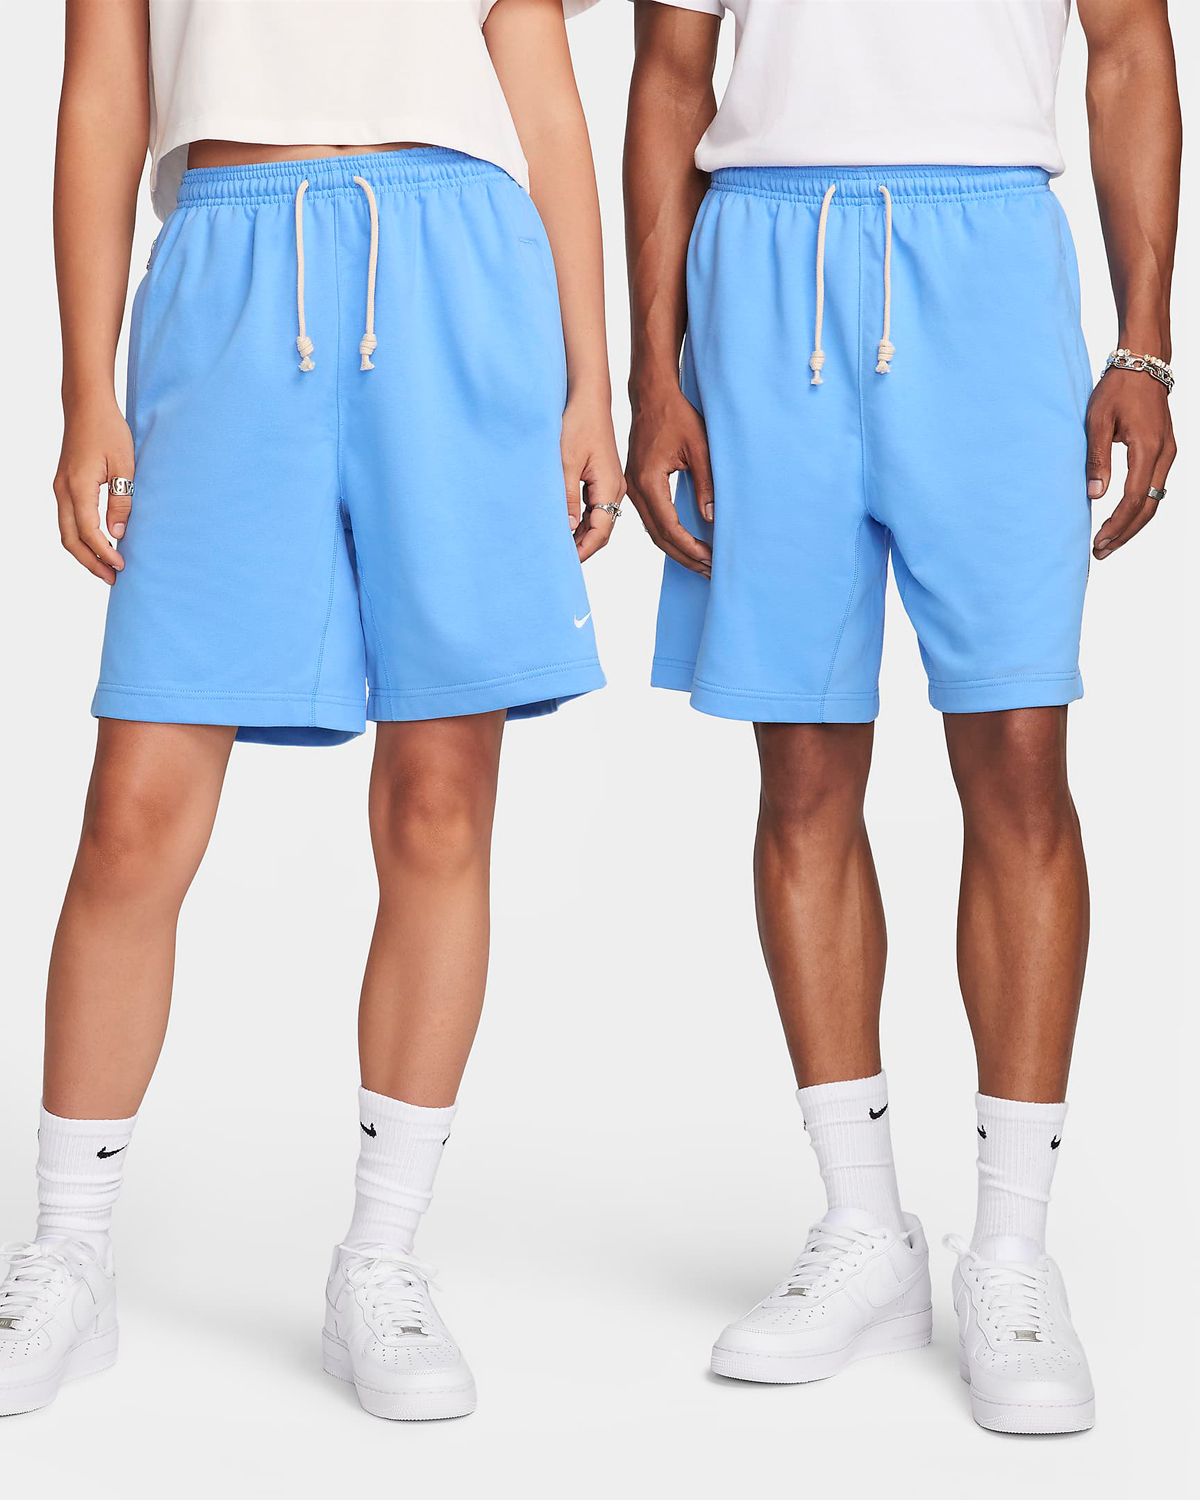 Nike-Standard-Issue-Shorts-University-Blue